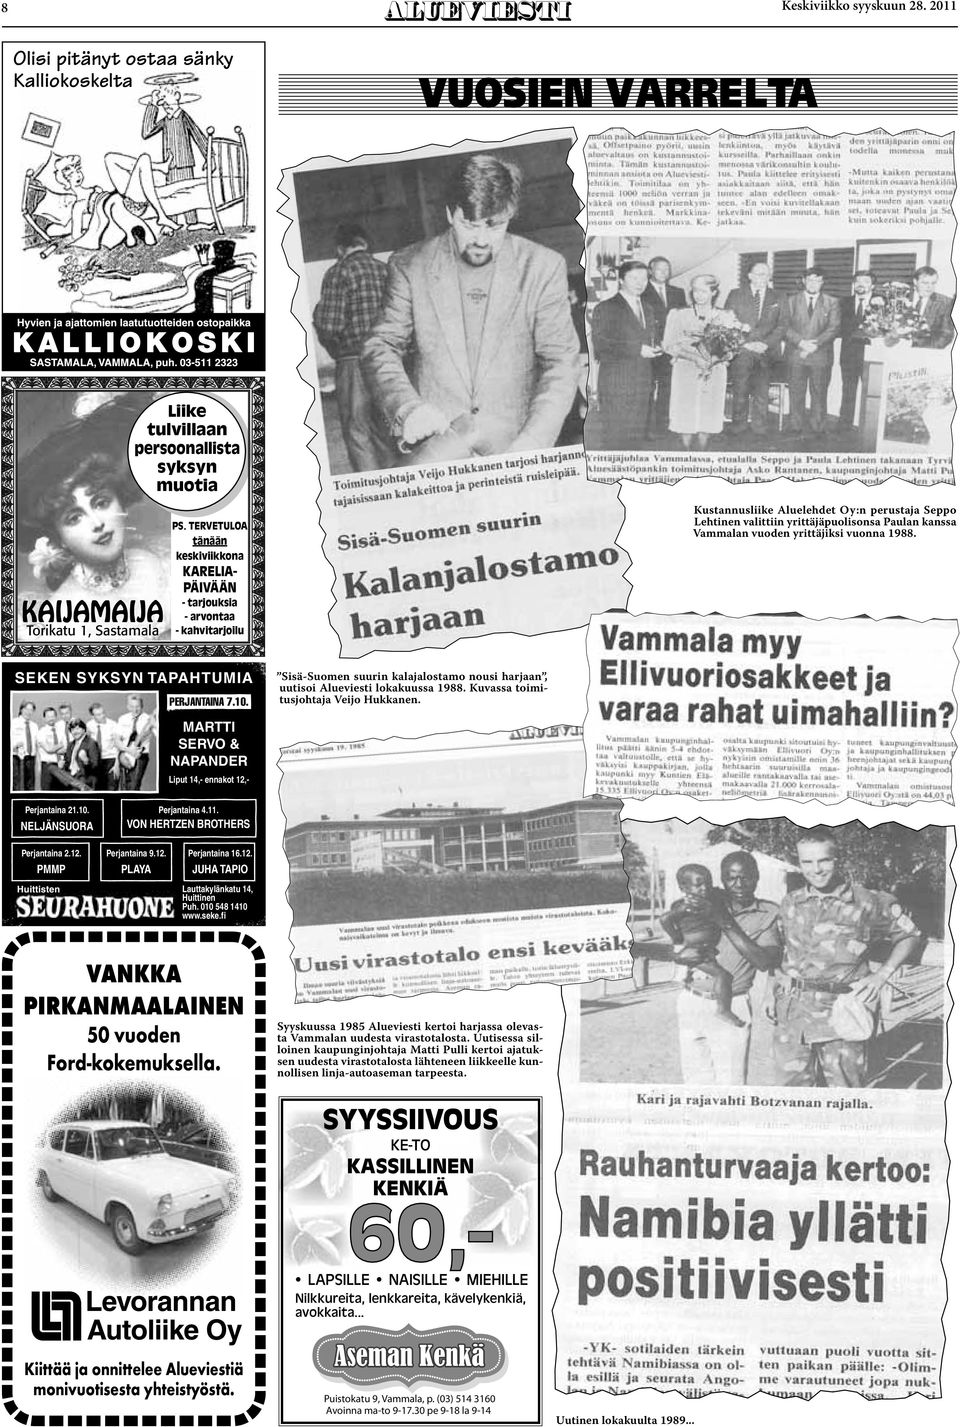 vuoden yrittäjiksi vuonna 1988. SEKEN SYKSYN TAPAHTUMIA PERJANTAINA 7.10. Sisä-Suomen suurin kalajalostamo nousi harjaan, uutisoi Alueviesti lokakuussa 1988. Kuvassa toimitusjohtaja Veijo Hukkanen.